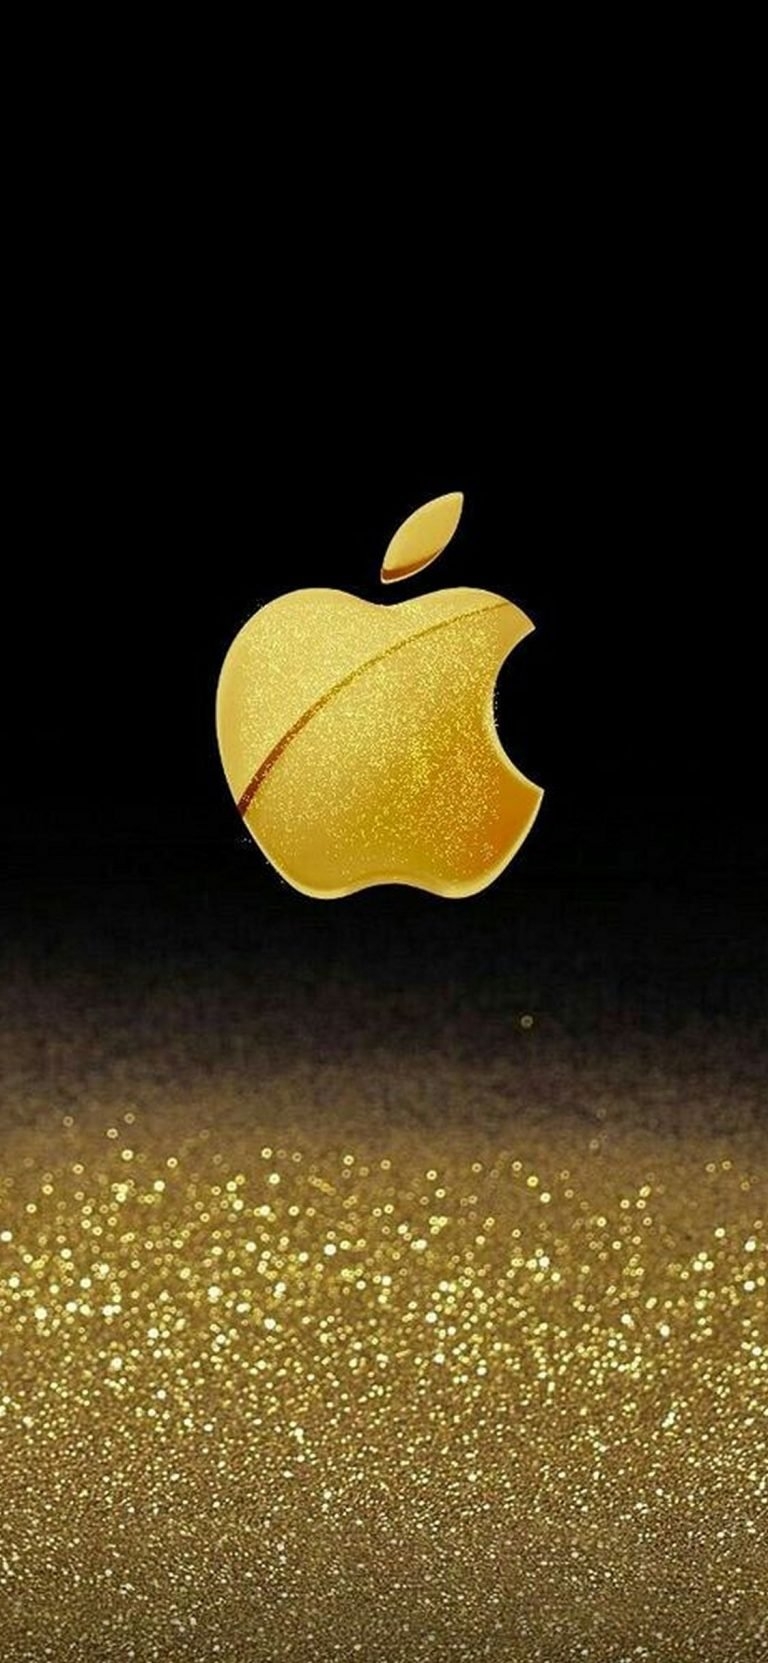 Apple iphone золотой. Голд эпл эпл Голд. Золотой айфон. Золотая заставка на айфон. Заставка Apple.